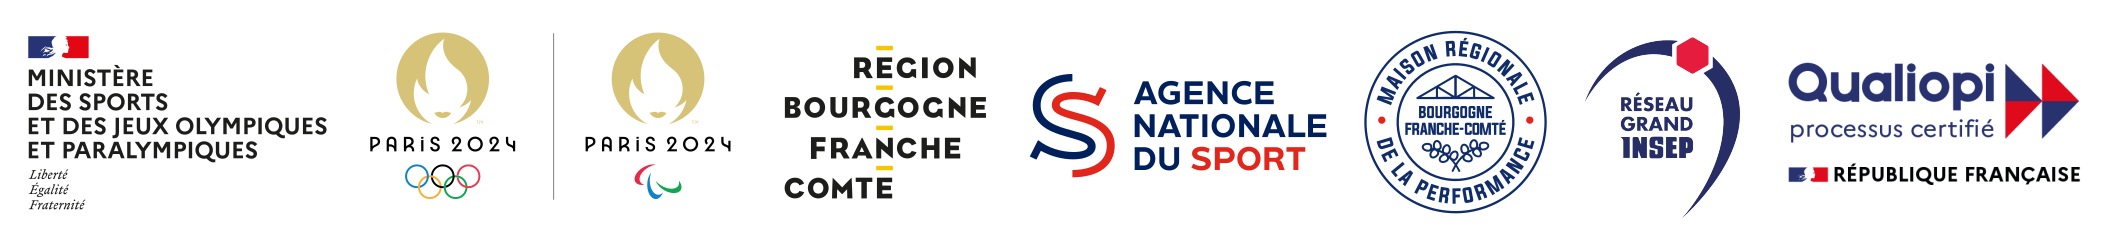 logos des partenaires du Creps Bourgogne Franche-Comté - Ministère - Jeux Olympiques 2024 de Paris - Agence Nationale du Sport - Qualiopi - MRP